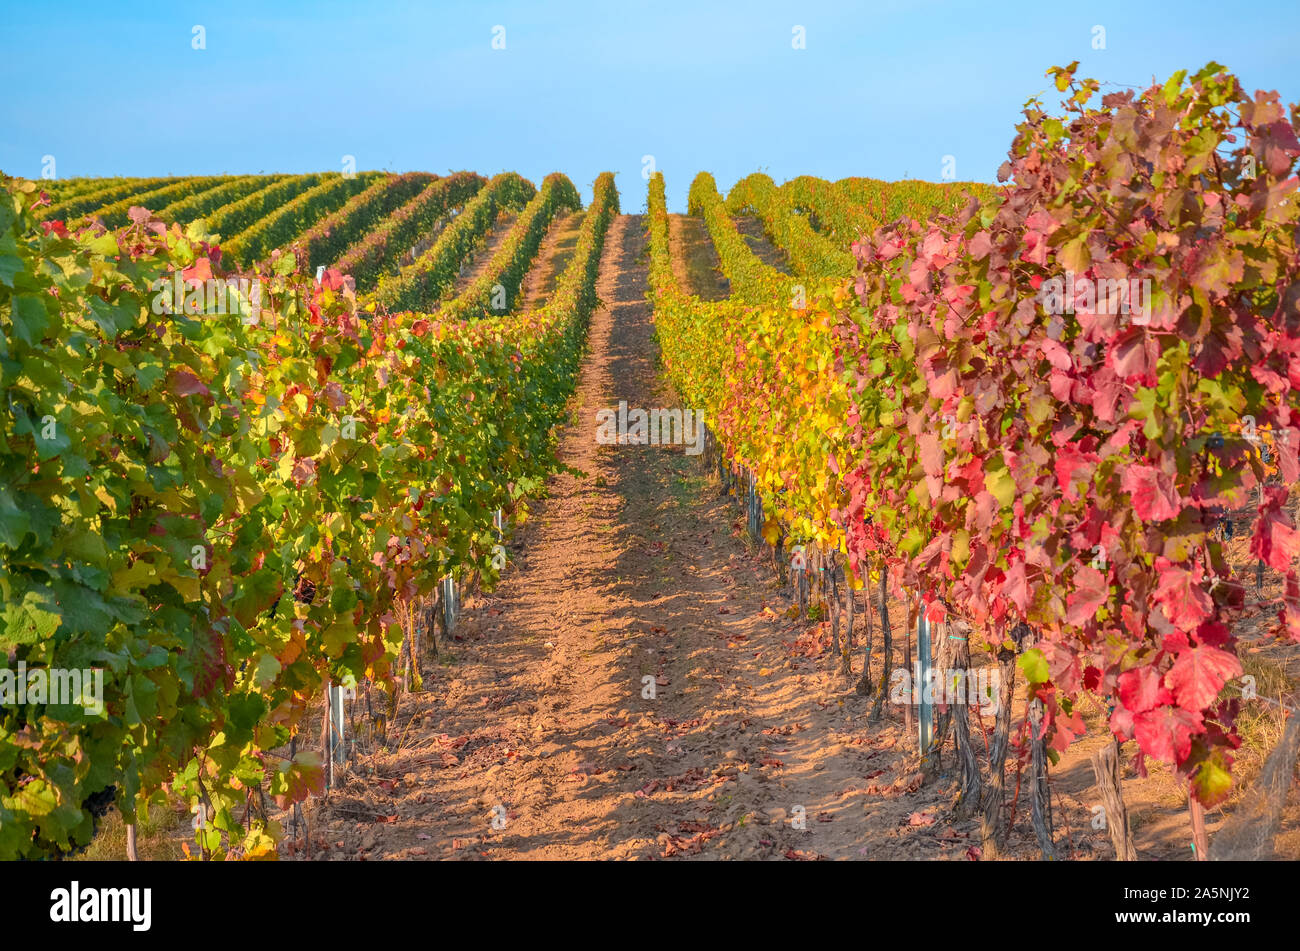 Beau vignoble d'automne en Moravie, en République tchèque. Rangées de vignes, feuilles floue en partie. Colorés, les feuilles de vigne rouge et or. Paysage d'automne. Saisons de l'année. Banque D'Images